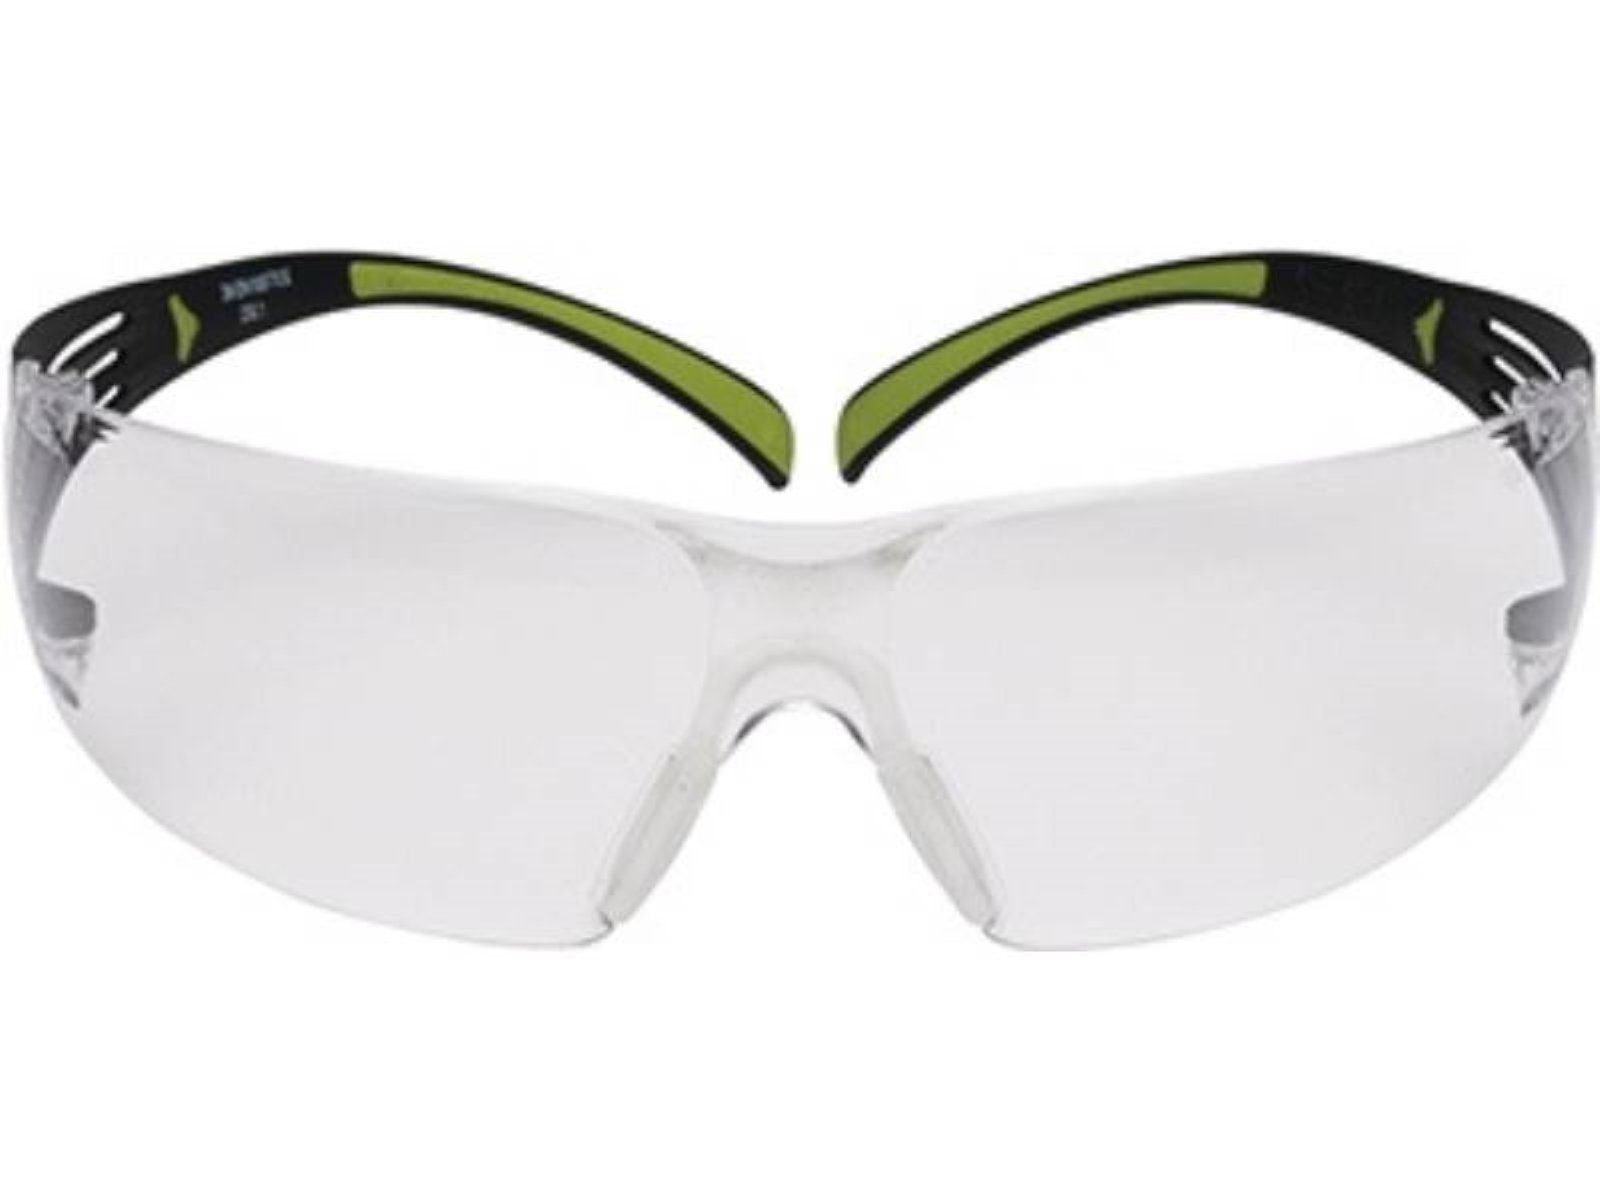 3M Arbeitsschutzbrille Schutzbrille Reader SecureFit™-SF400 EN 166 Bügel schwarz grün,Scheibe klar +1,5 EN 166 (AS/AF-EU) · die rahmenlose Scheibe enthält im unteren Bereich einen Lesebereich (in den Stärken +1,5 - + 2 - +2,5 Dioptrien erhältlich), um Detailarbeit zu vergrößern